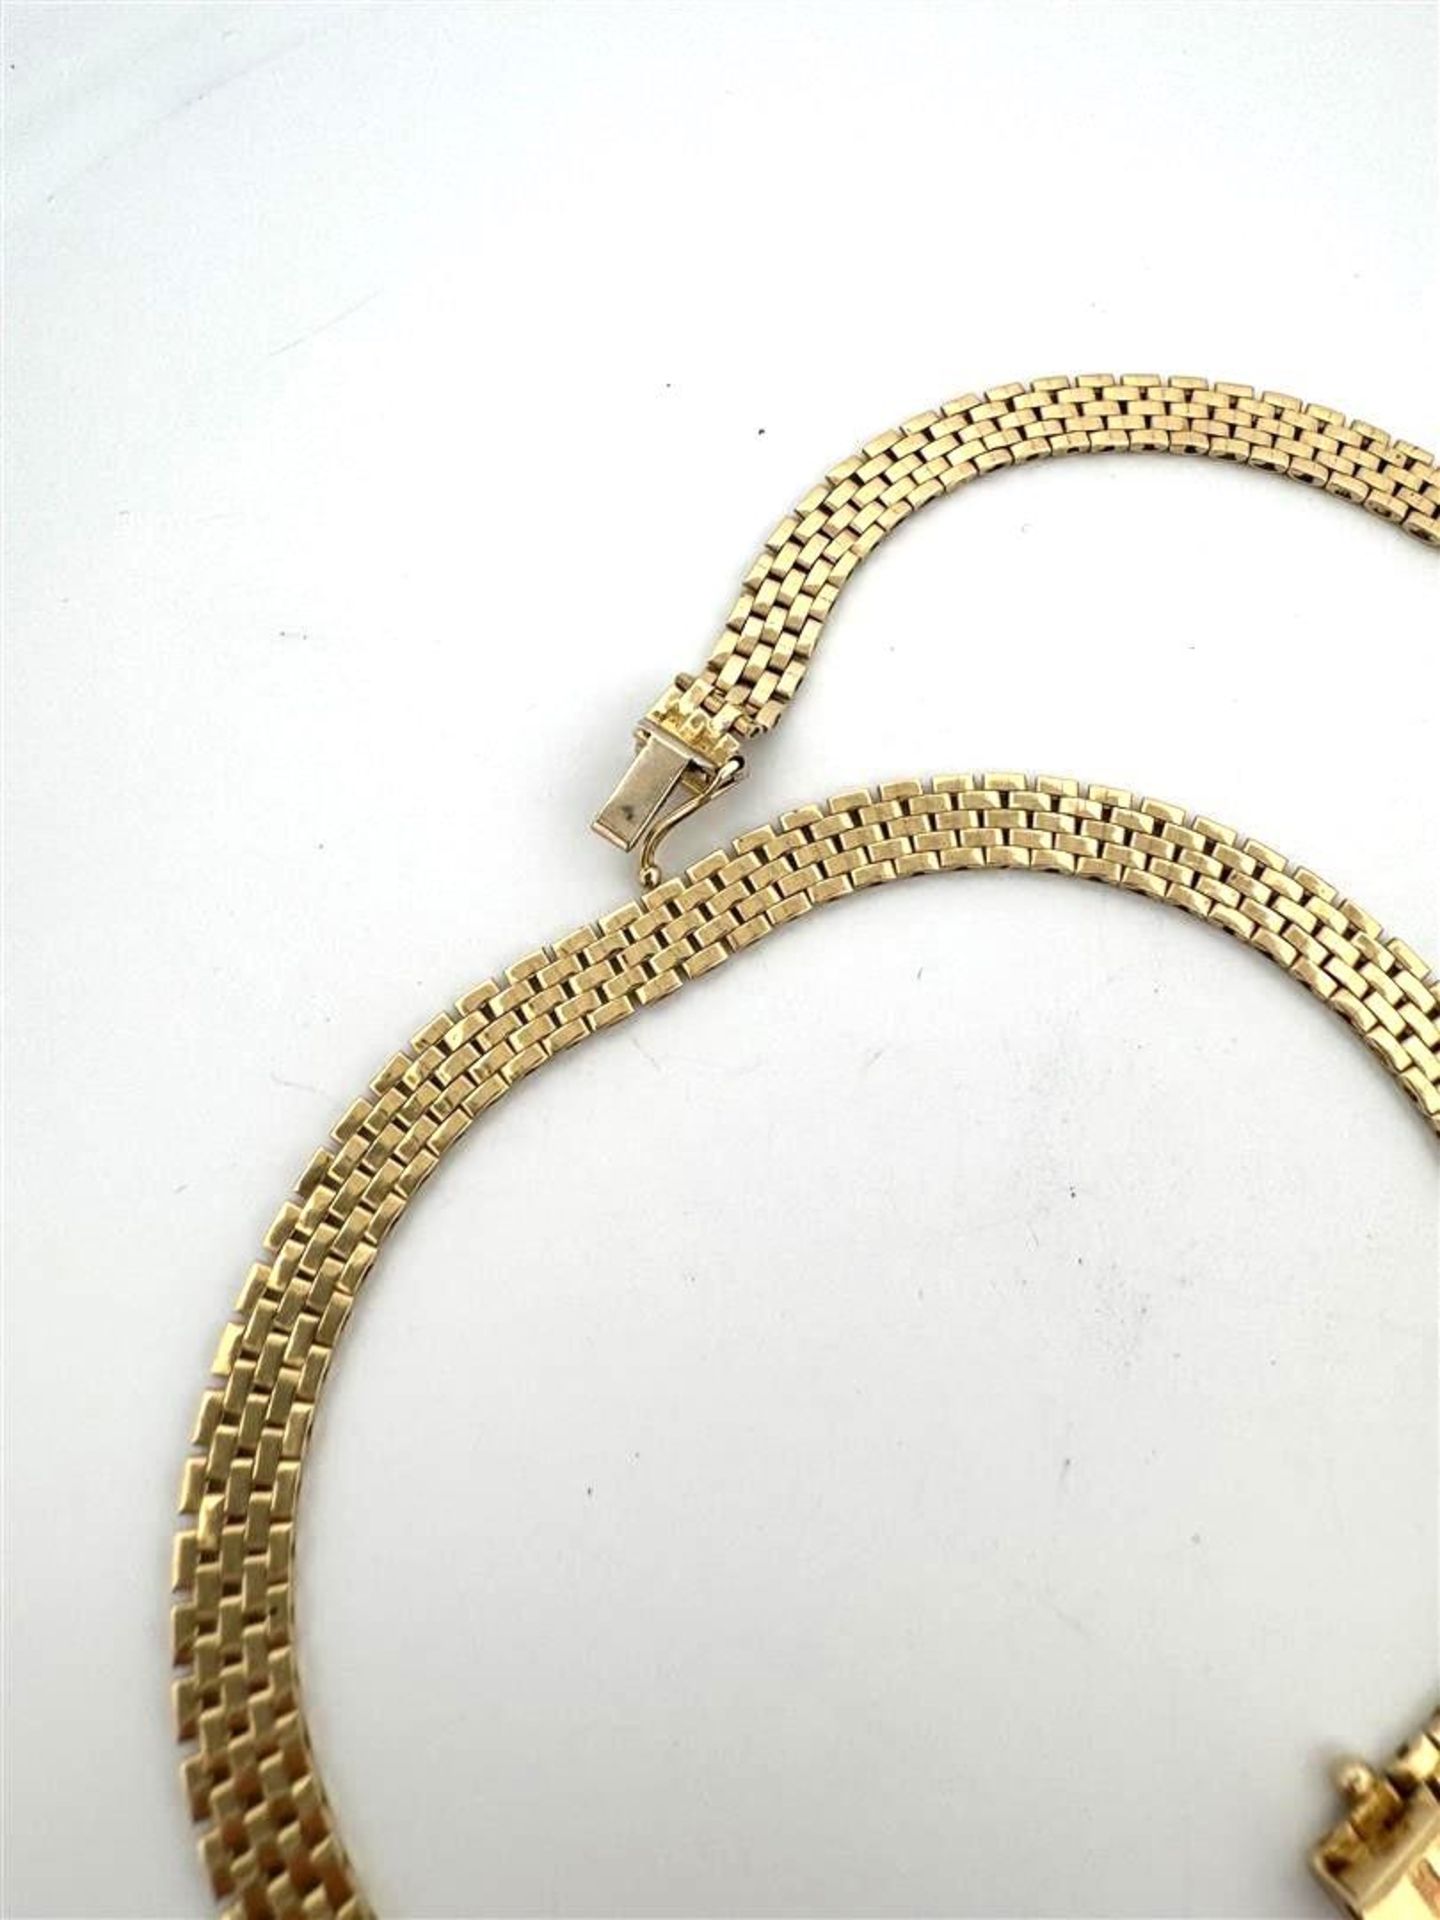 14kt yellow gold Rolex link necklace.
Length: 45 cm
Link width: 6.2 mm
Weight: 22.1 grams
Inspection - Bild 2 aus 3